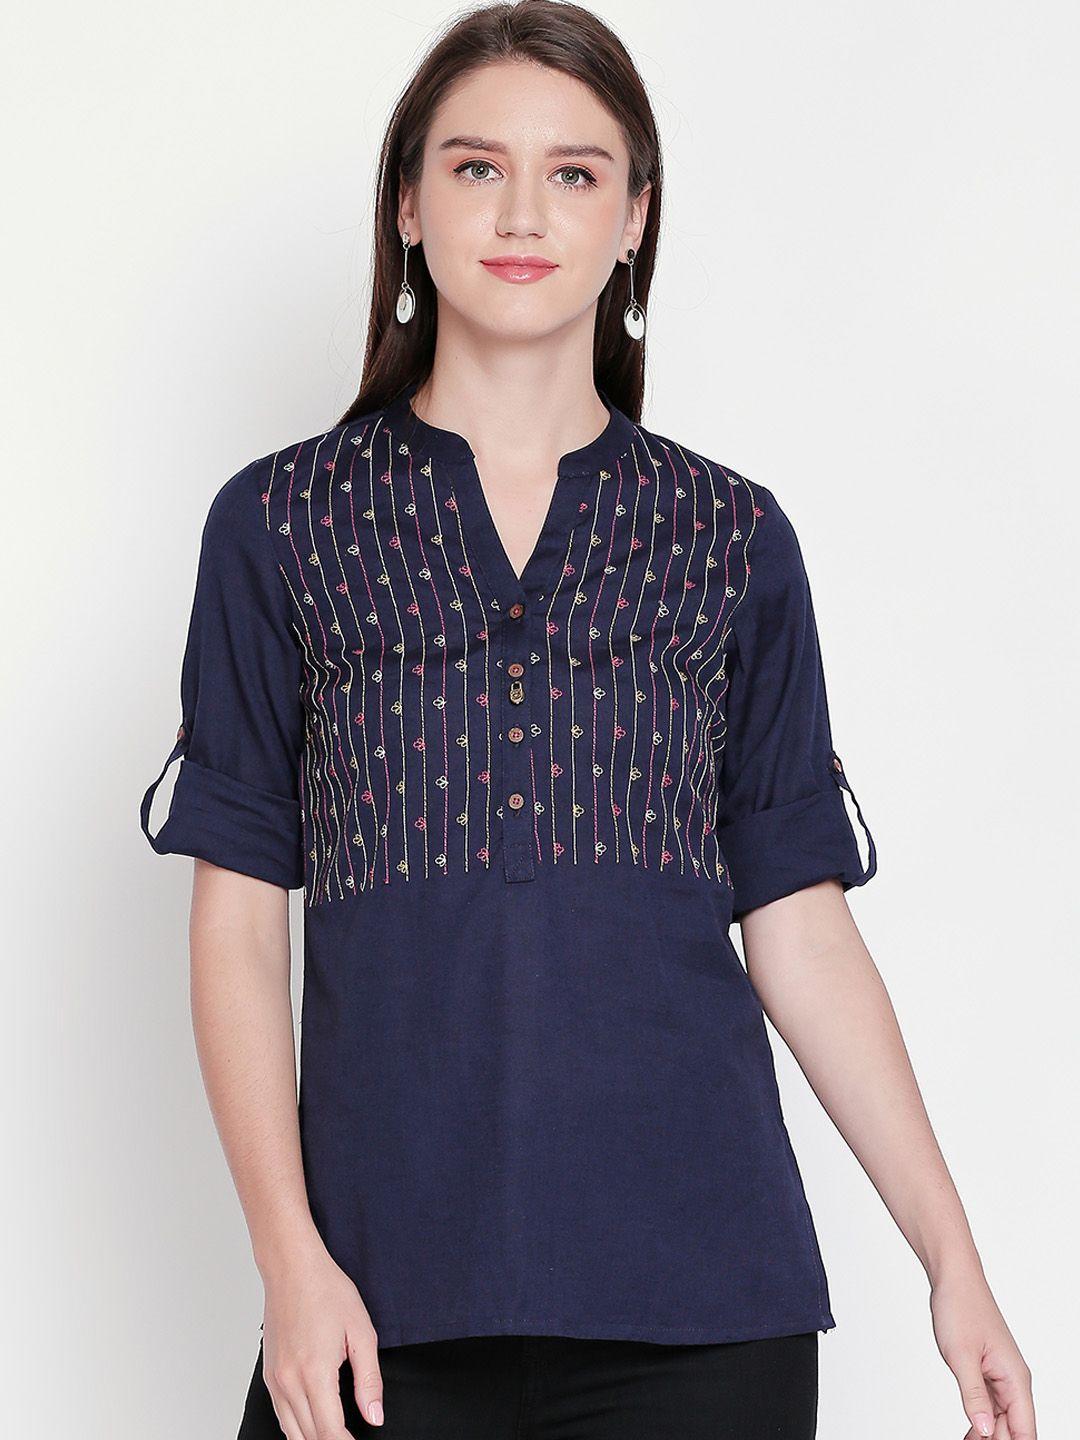 akkriti-by-pantaloons-women-embroidered-tunic